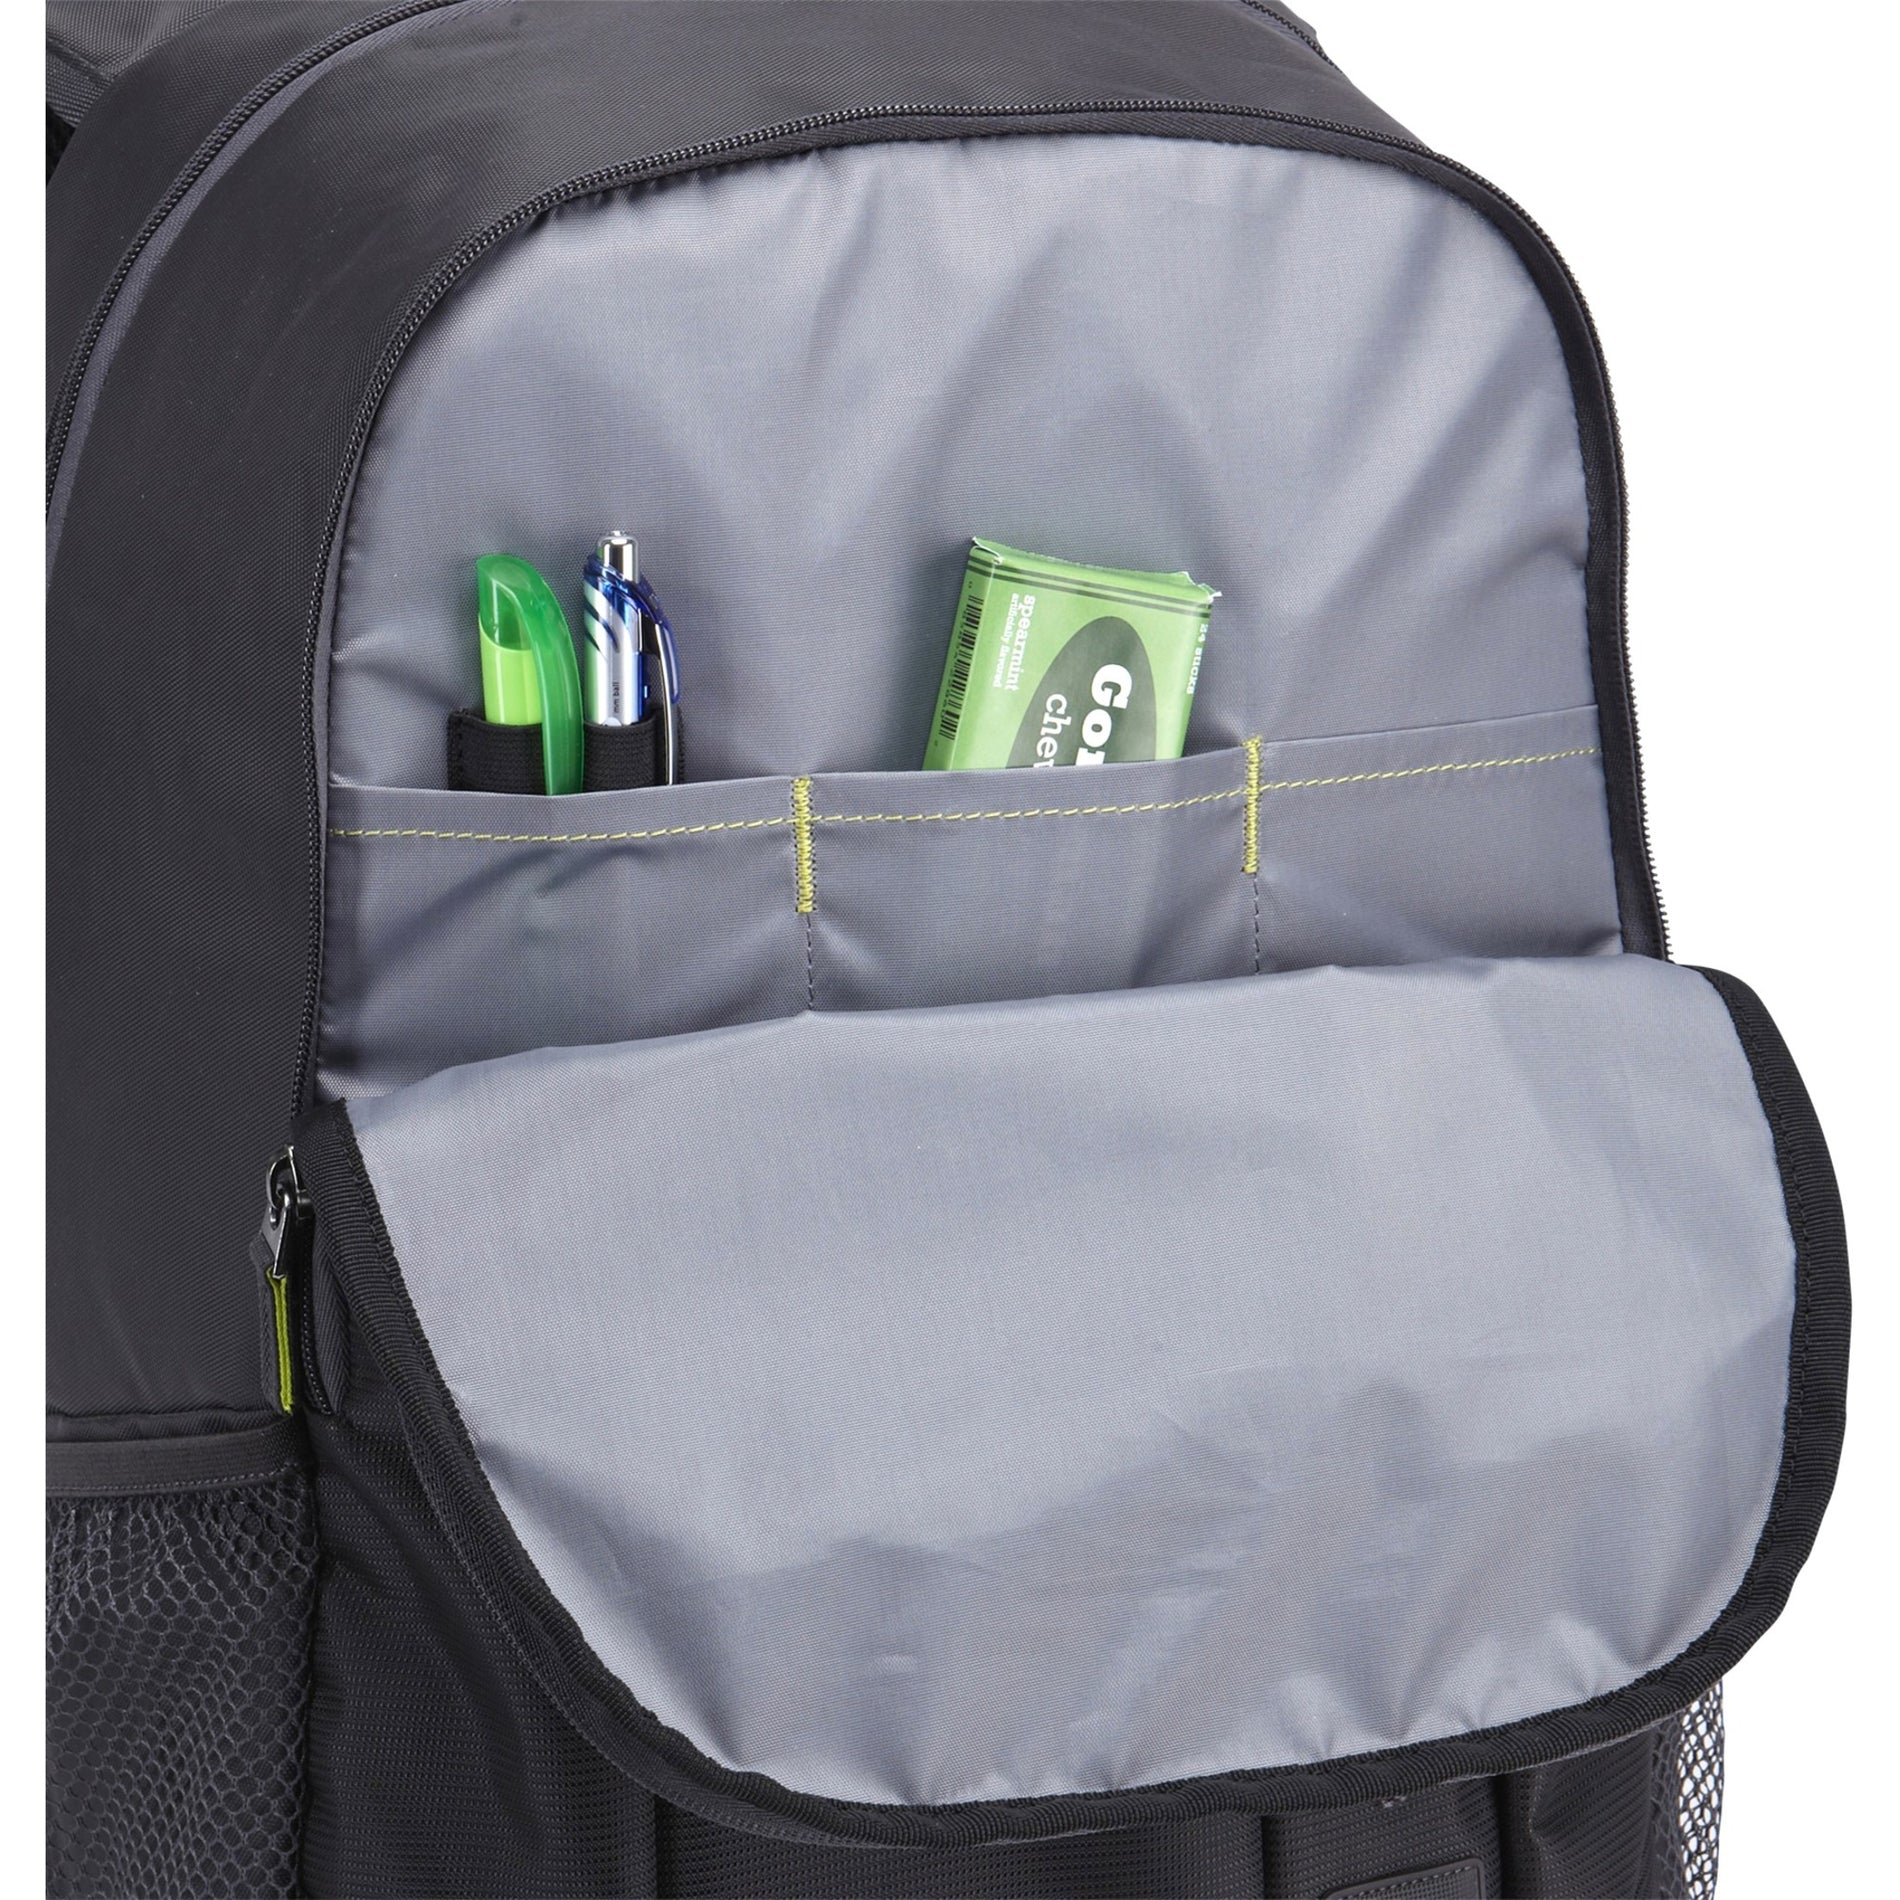 Case Logic 3203407 Jaunt Backpack, Brick Laptop Backpack 15.6in